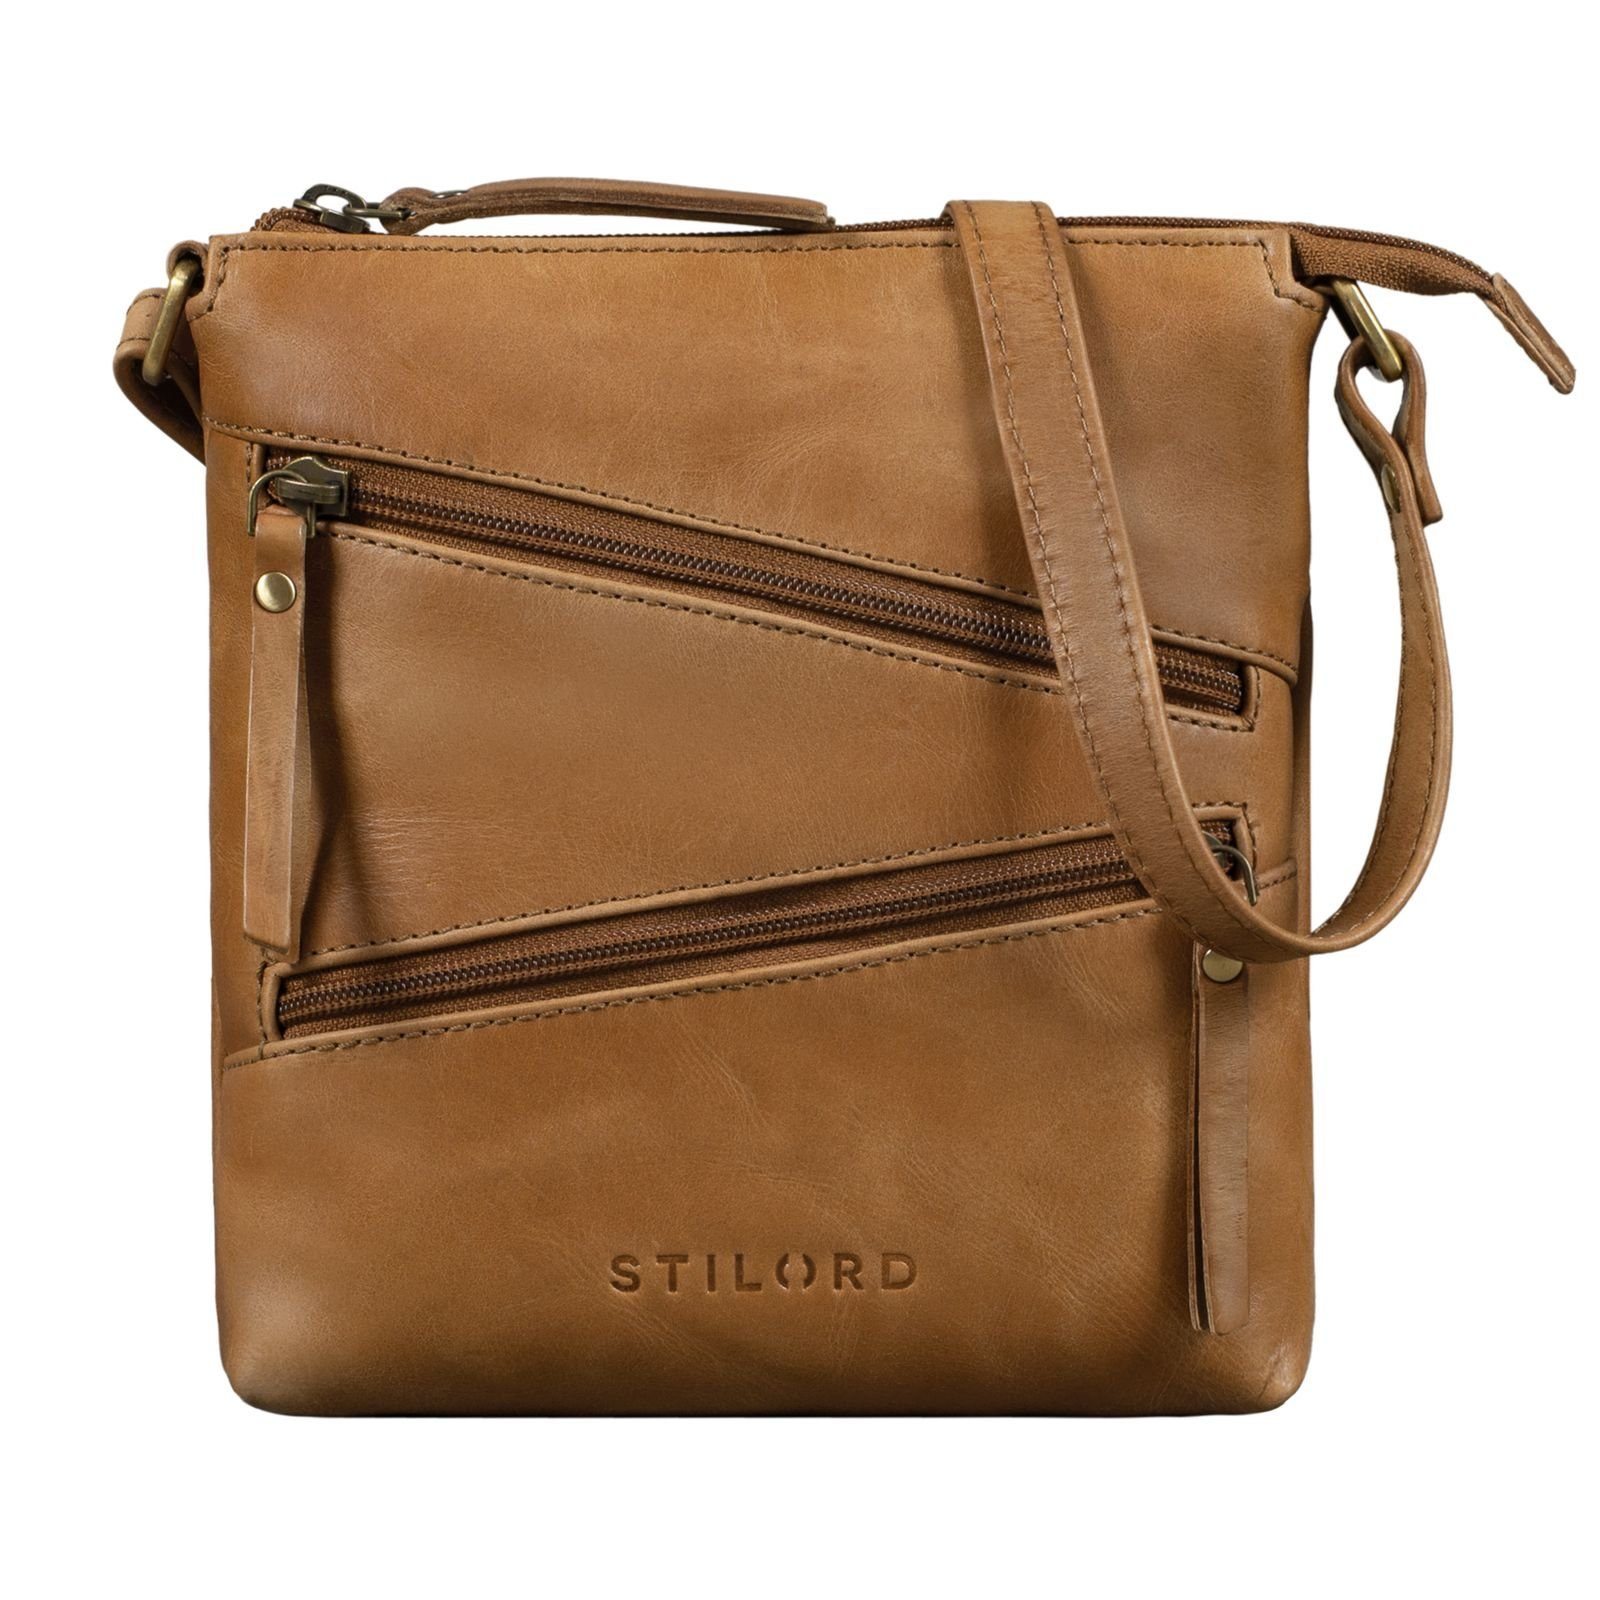 STILORD Handtasche "Alina" Schultertasche Damen Leder Vintage taranto - braun | Handtaschen